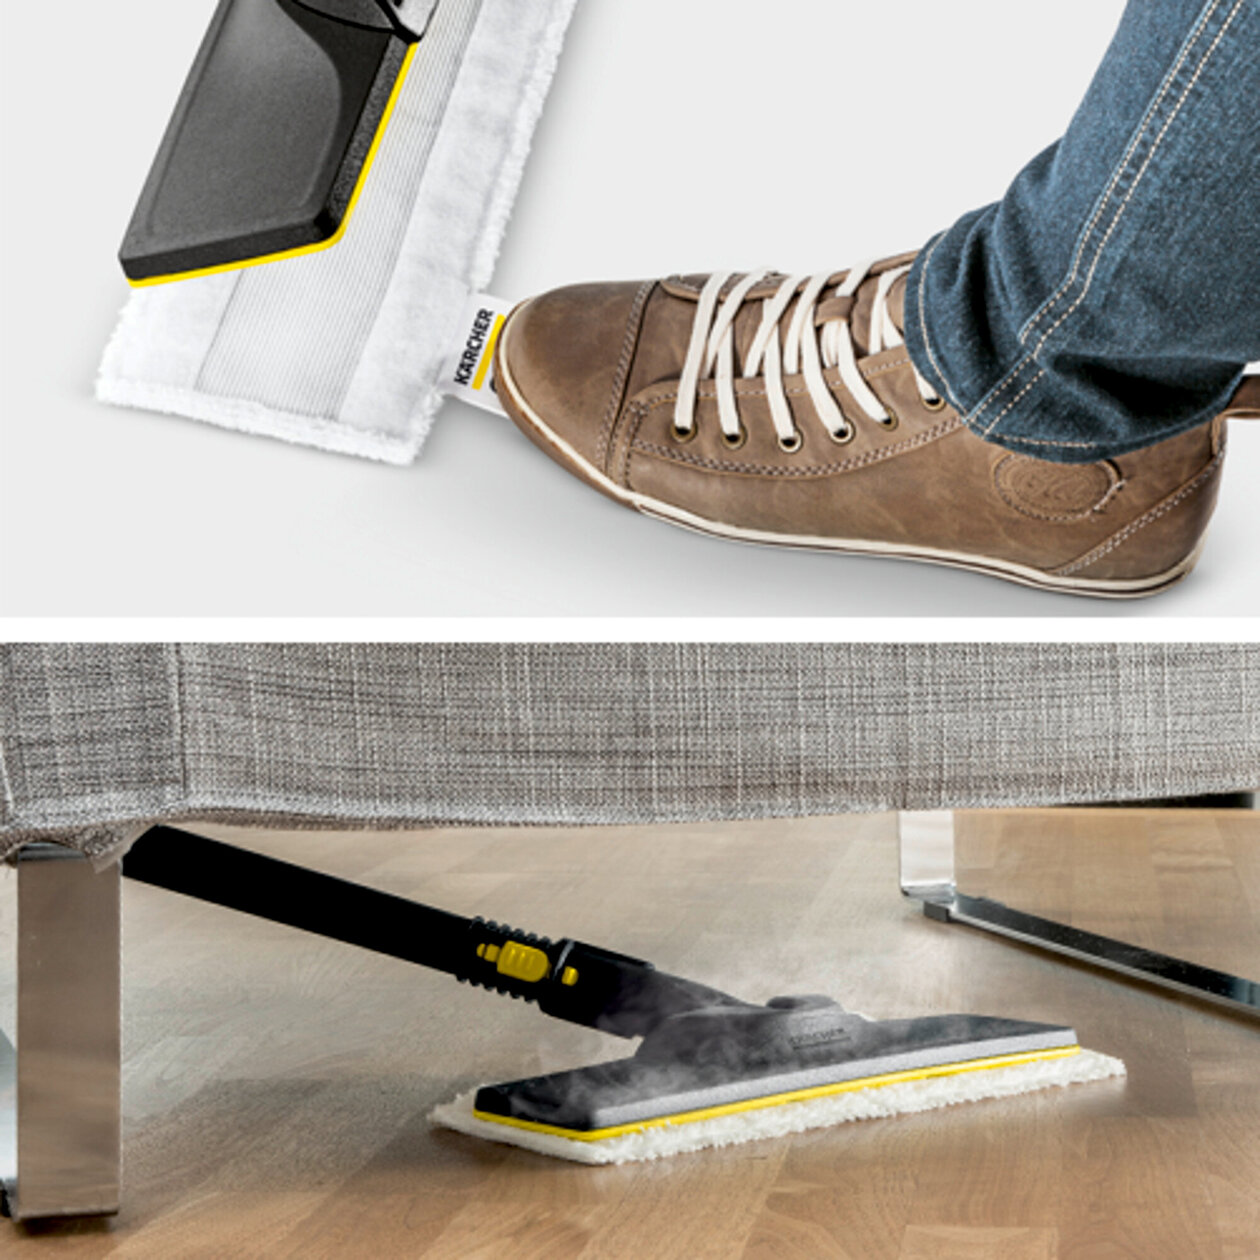  Parný čistič SC 2 Deluxe EasyFix: Súprava na čistenie podlahy EasyFix s flexibilným kĺbom na podlahovej hubici a pohodlným suchým zipsom na upevnenie utierky na podlahu